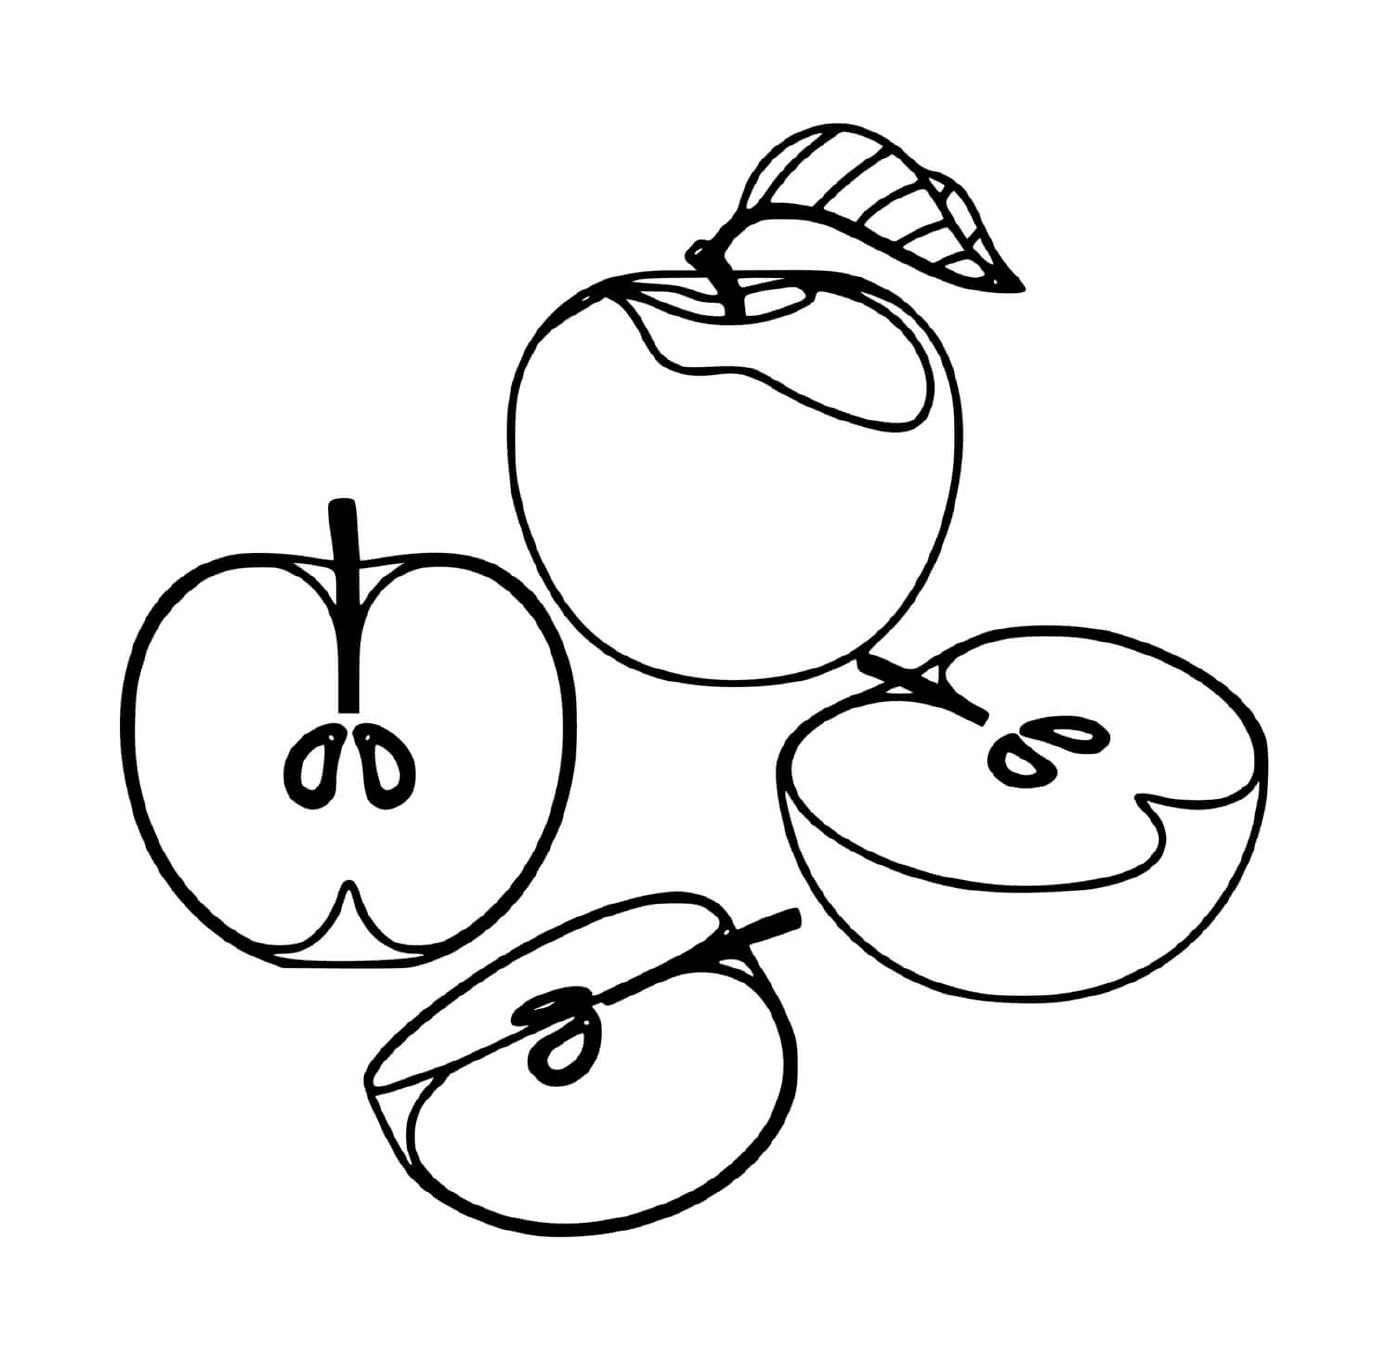  Köstliche und saftige Äpfel 